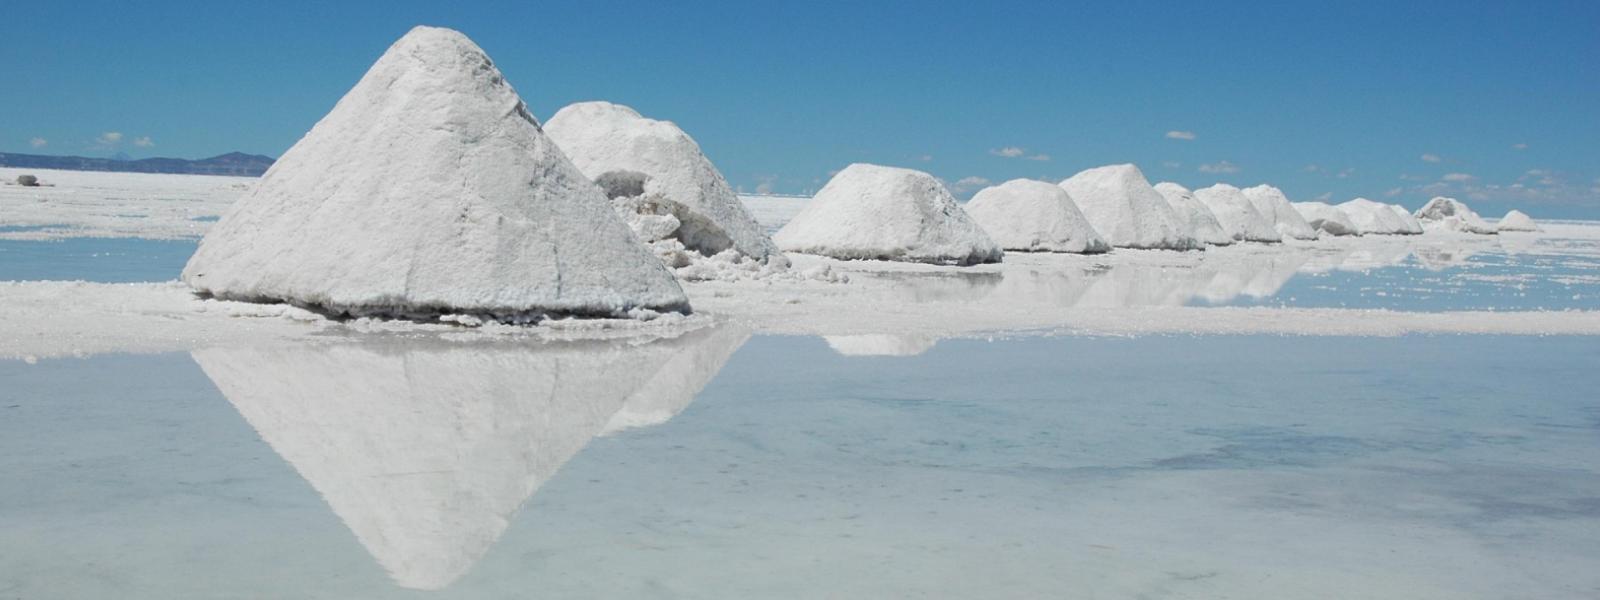 Montones de sal en el salar de Uyuni, Bolivia